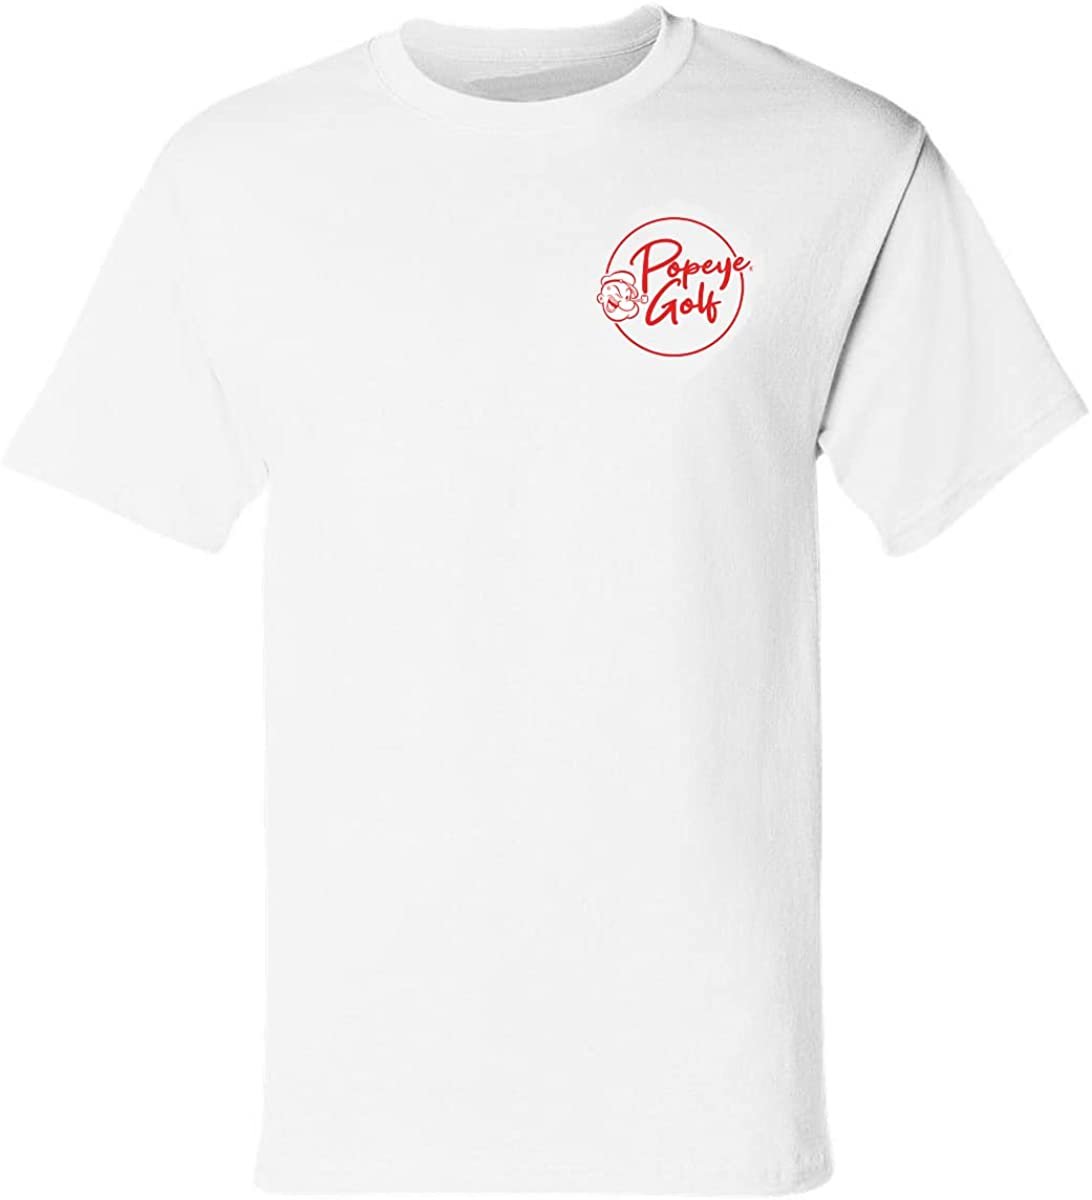 Popeye Olive OYL Golf My Hero Print T-Shirt